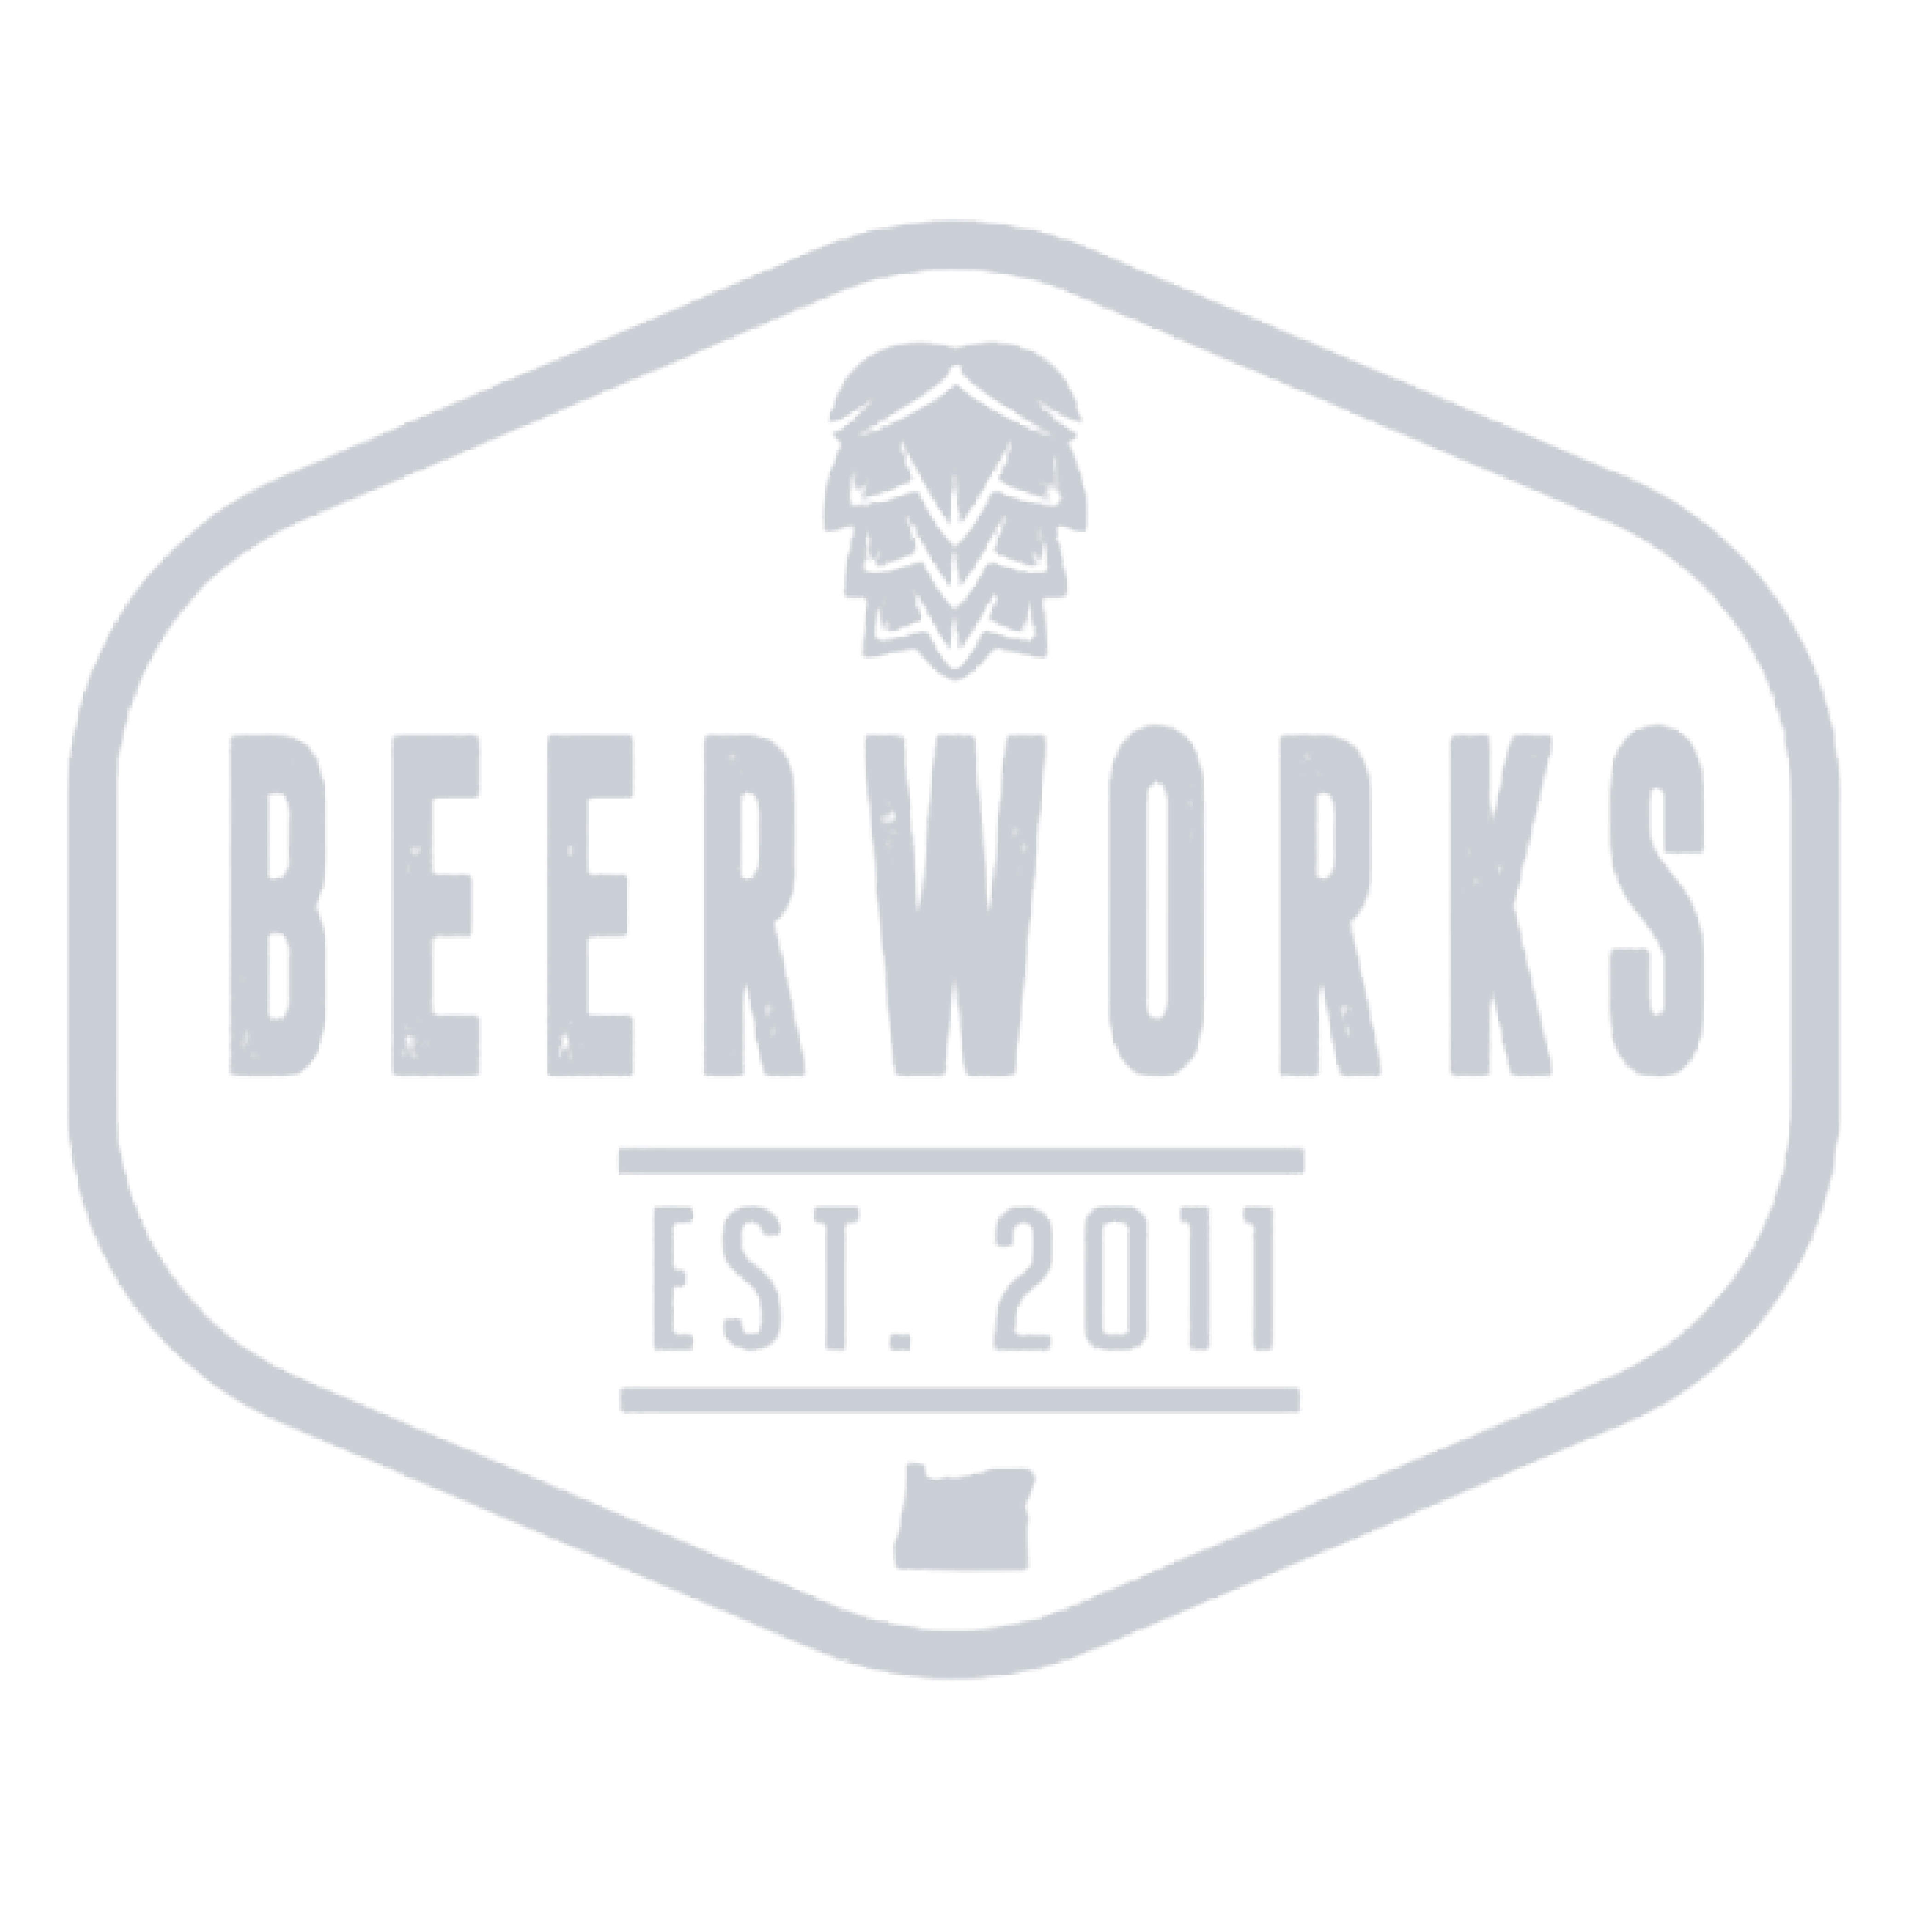 beerWorks